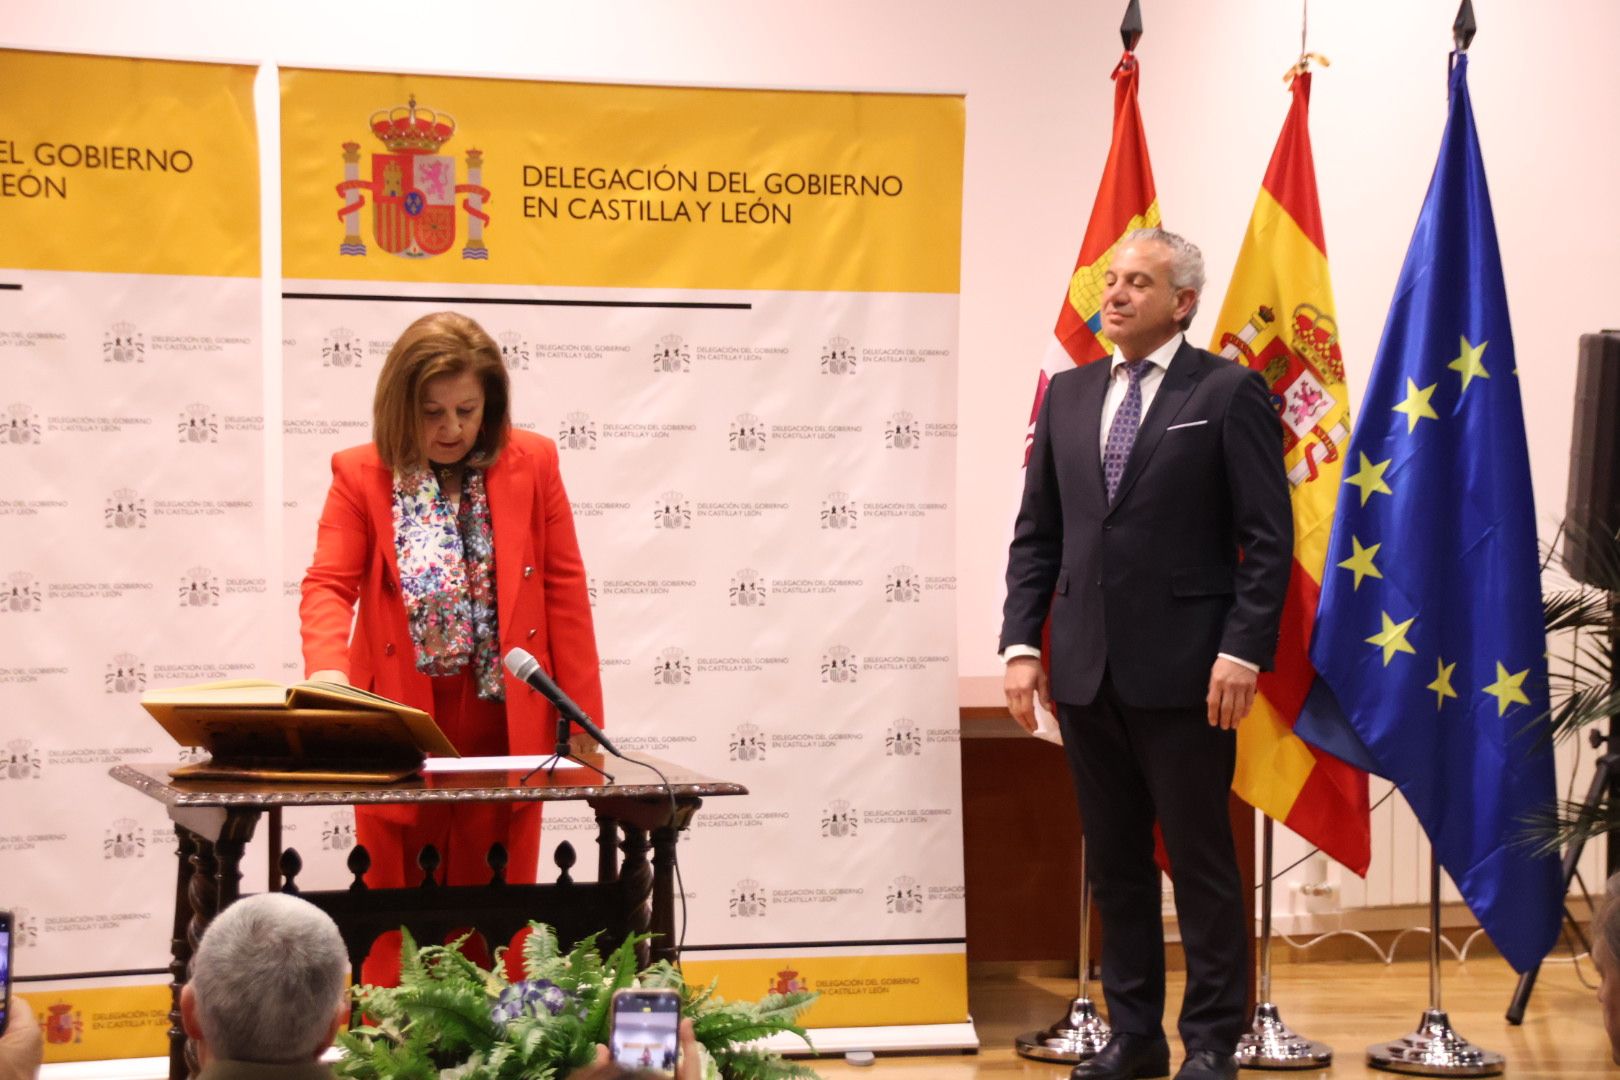 Acto de toma de posesión de la nueva subdelegada del Gobierno en Salamanca, Rosa María López. Fotos Andrea M.